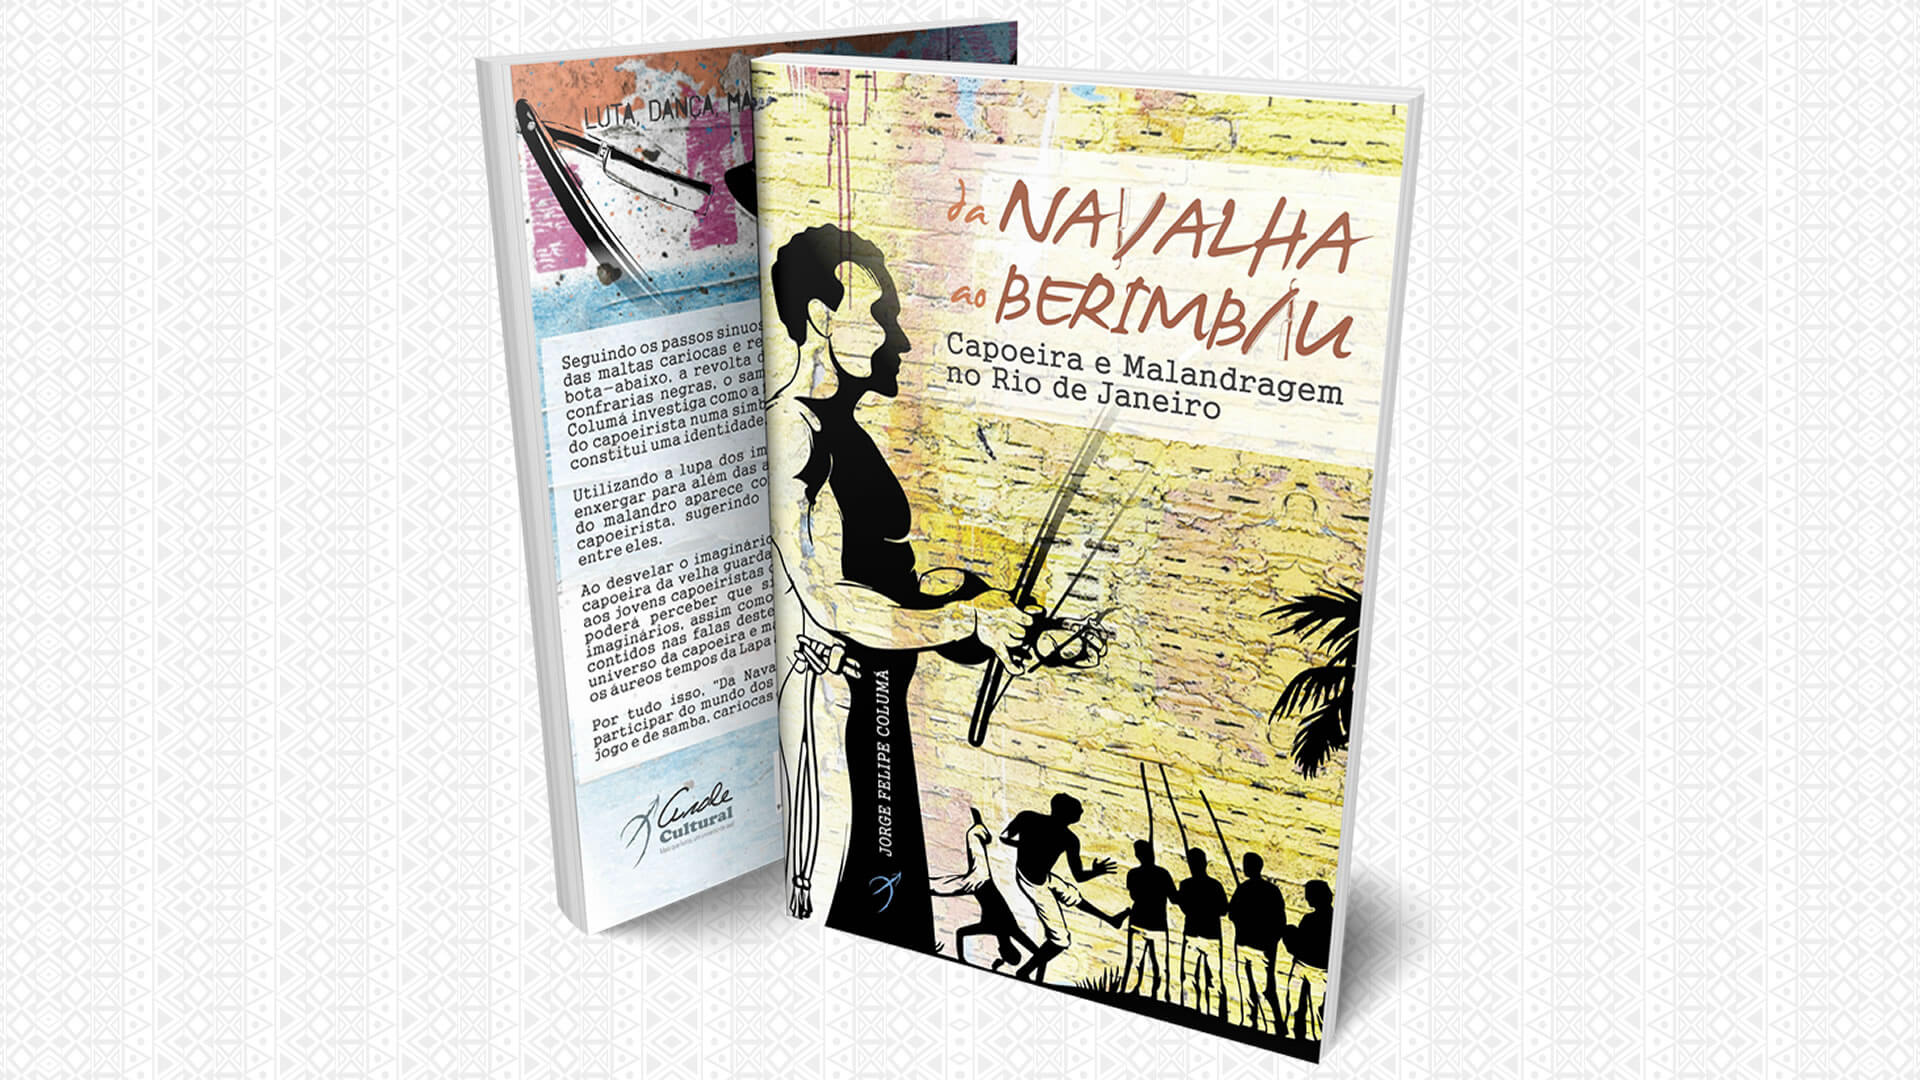 Livro conta a história da Capoeira e da Malandragem no Rio de Janeiro